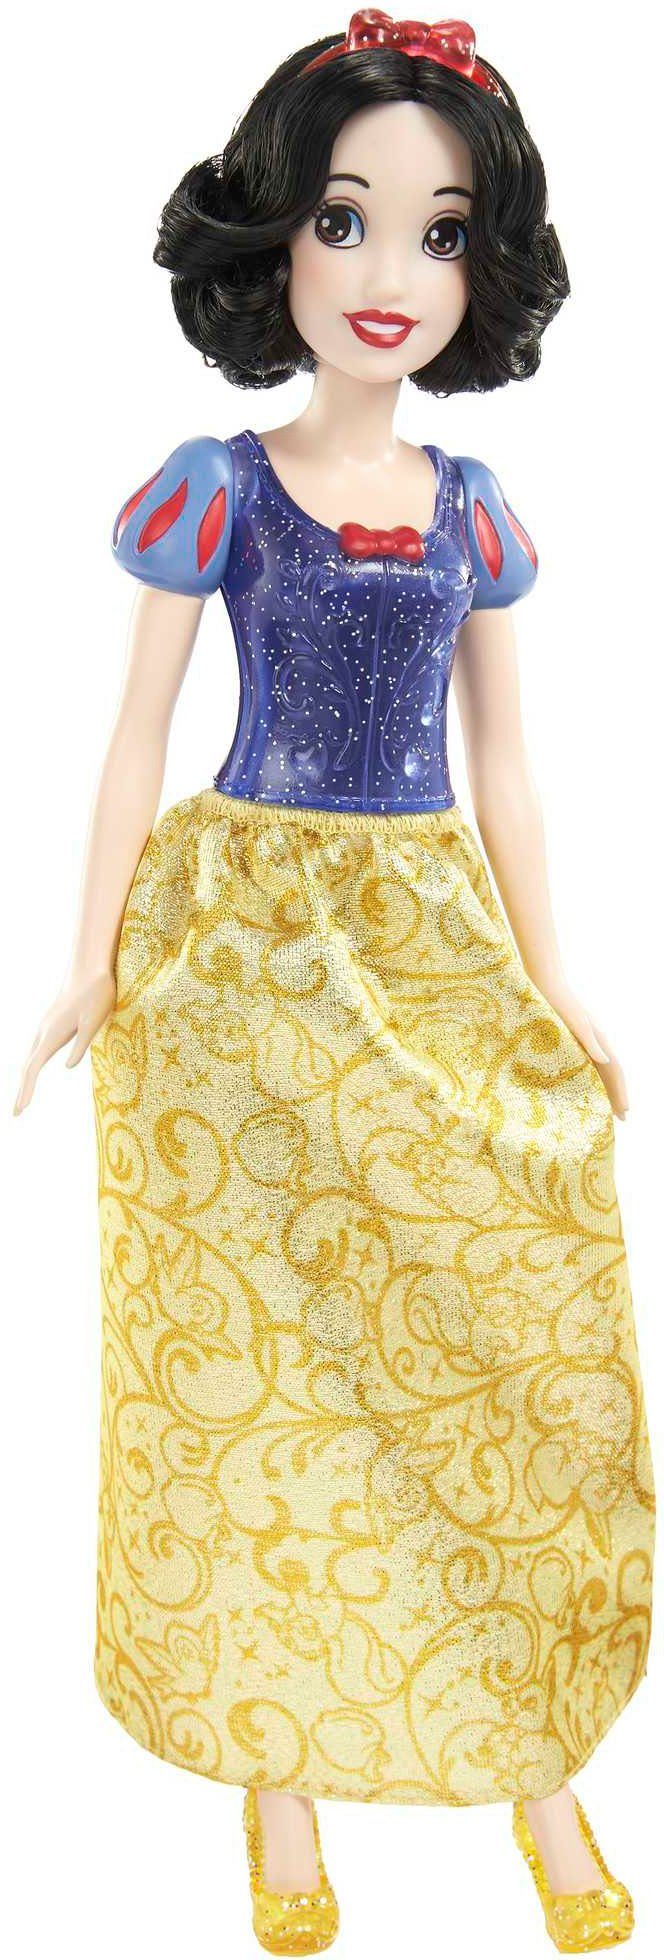 Mattel® Anziehpuppe Anziehpuppe Princess Princess Modepuppe »Disney Disney Schneewittchen, Schneewittchen« Modepuppe